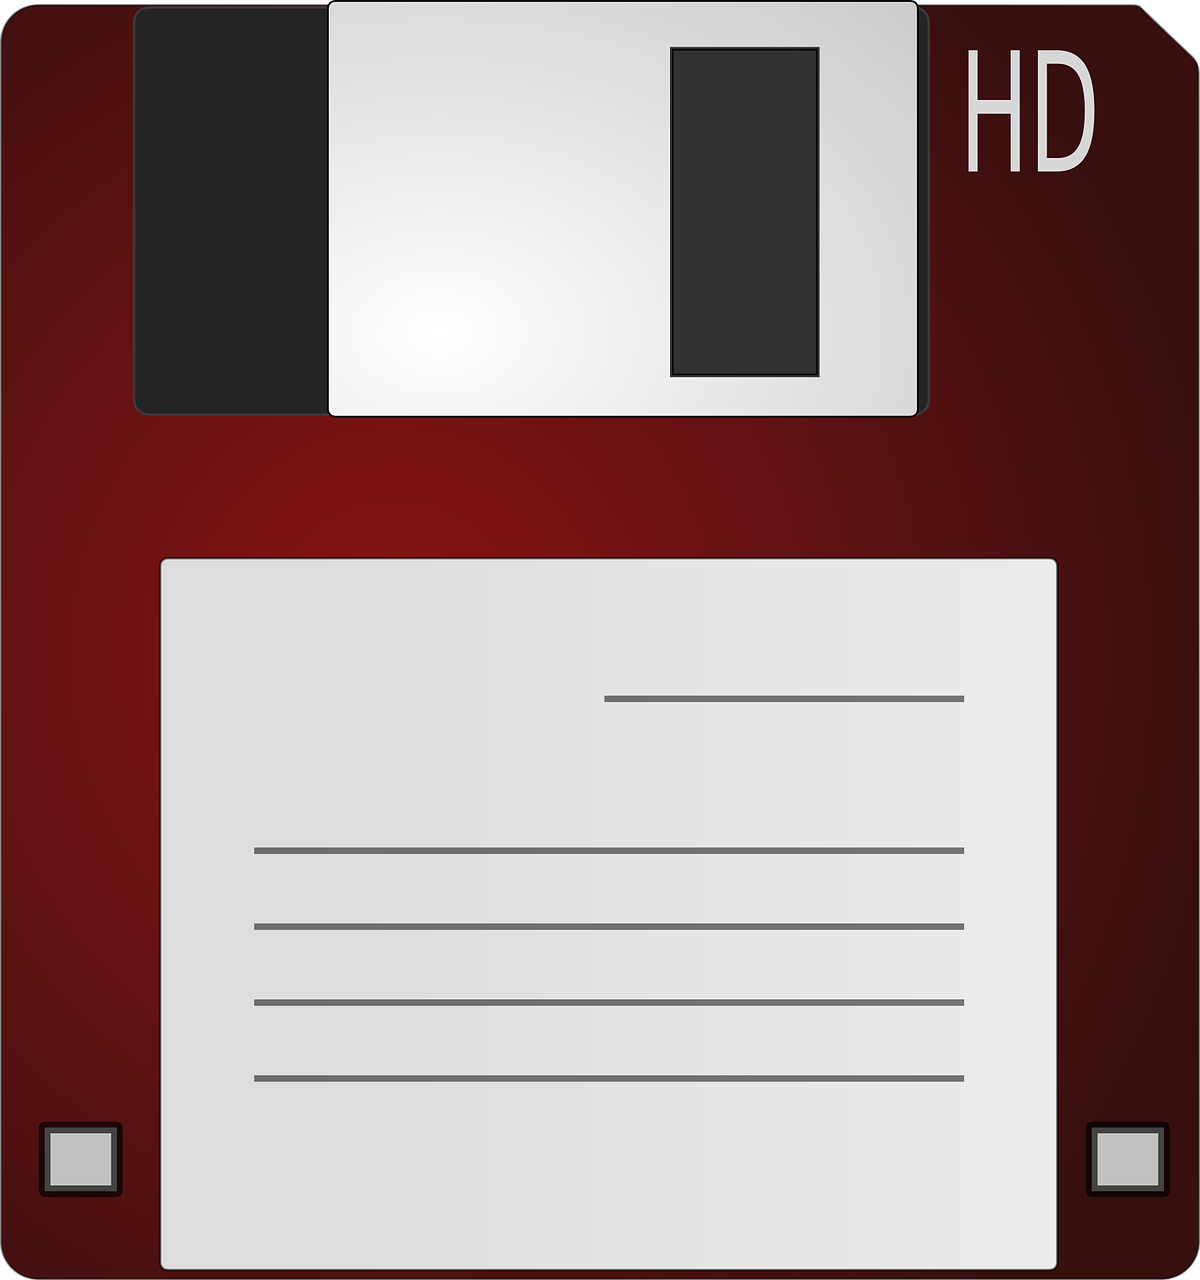 Floppy, Diskas, Saugojimas, Biuras, Sutaupyti, Darbas, Duomenys, Technologija, Kompiuteris, Diskette